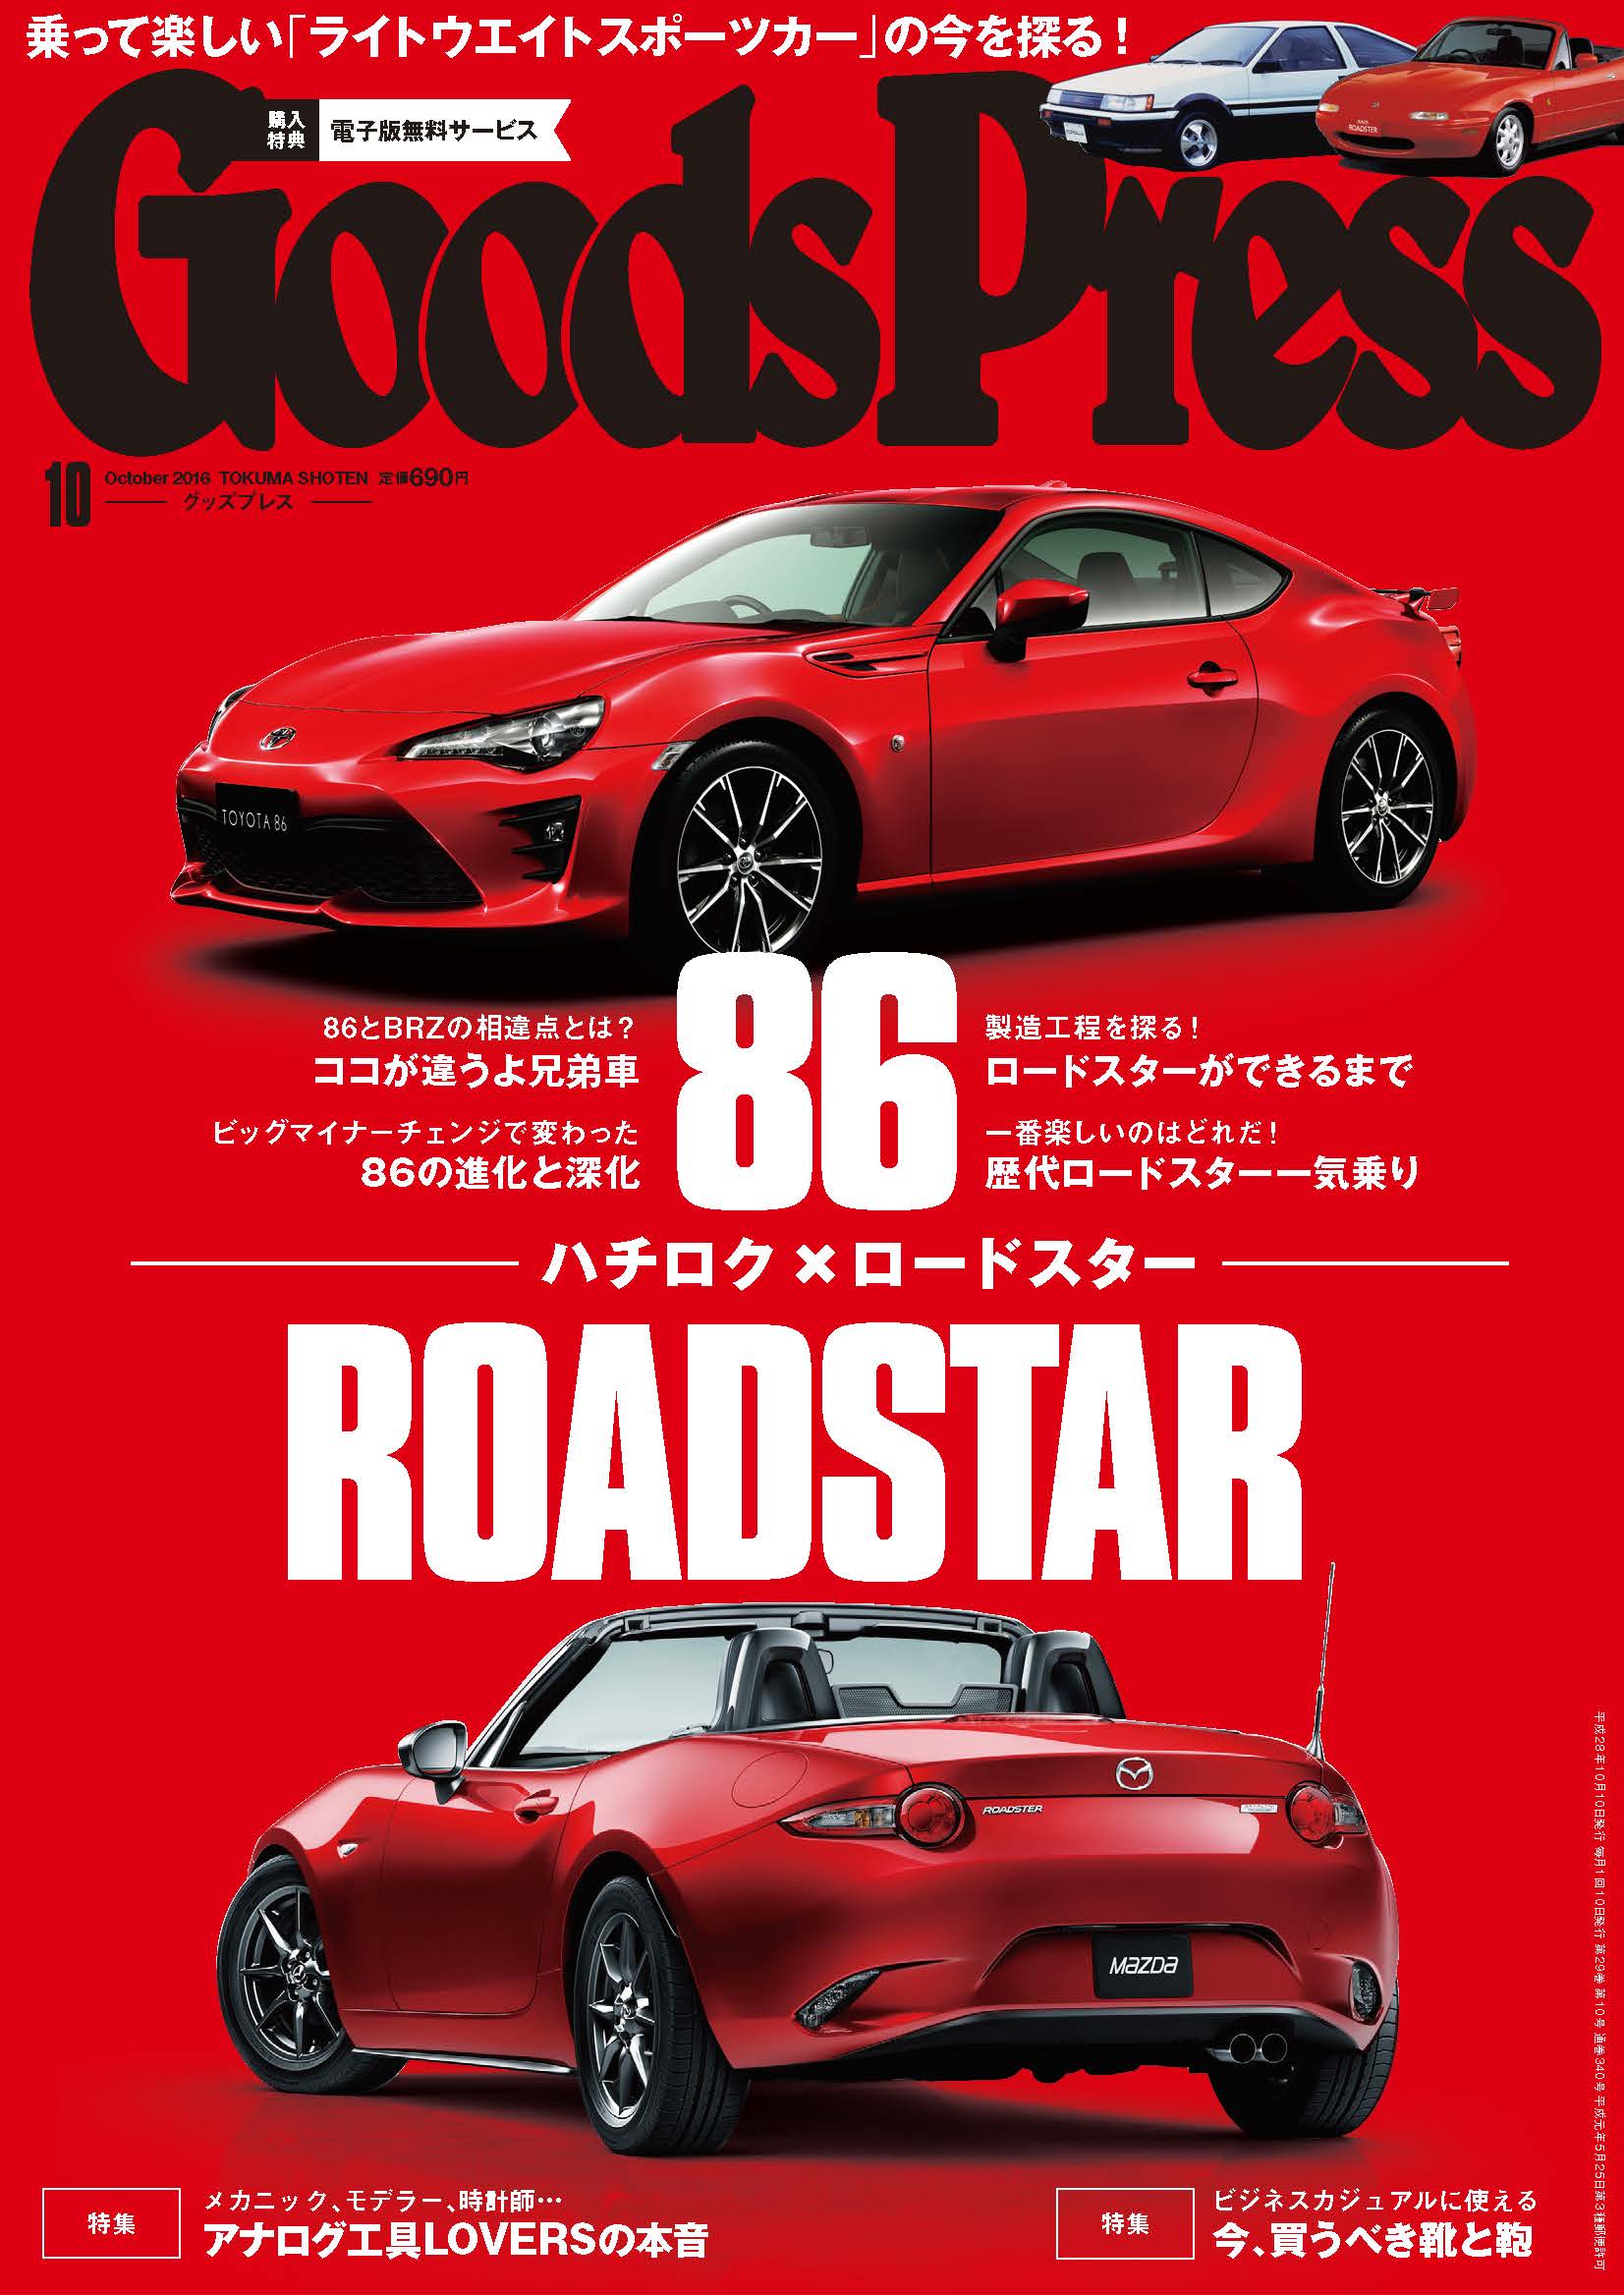 本日9 6 火 発売 Goodspress 10月号は 逆襲のジャパニーズスポーツカーと題し 86 ハチロク とロードスターを大特集 徳間書店のプレスリリース